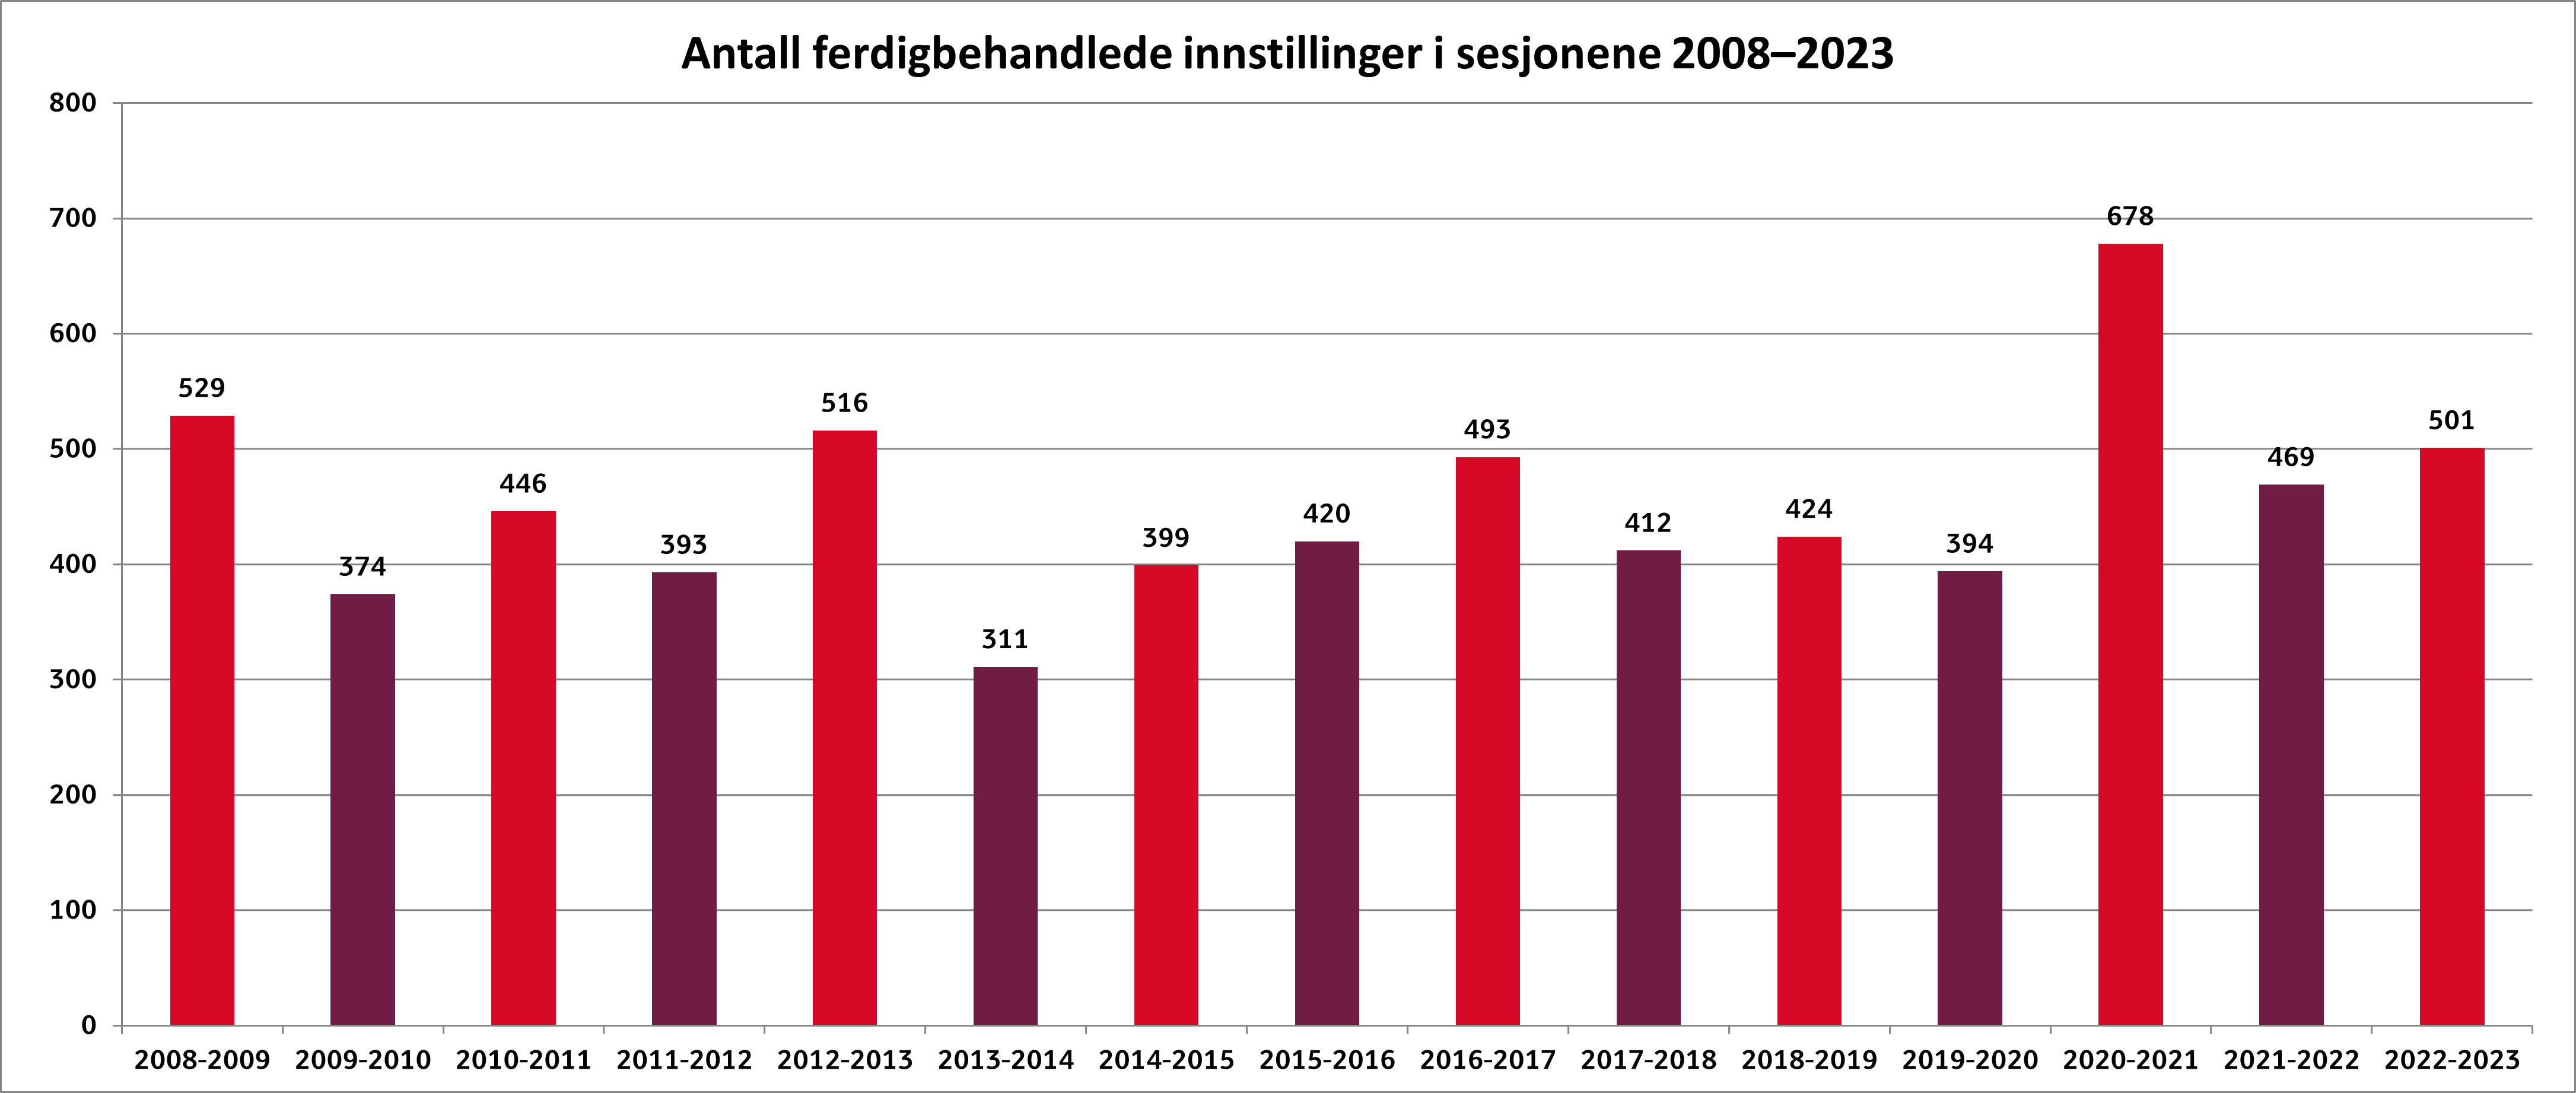 Antall ferdigbehandlede innstillinger 2008-2023.png